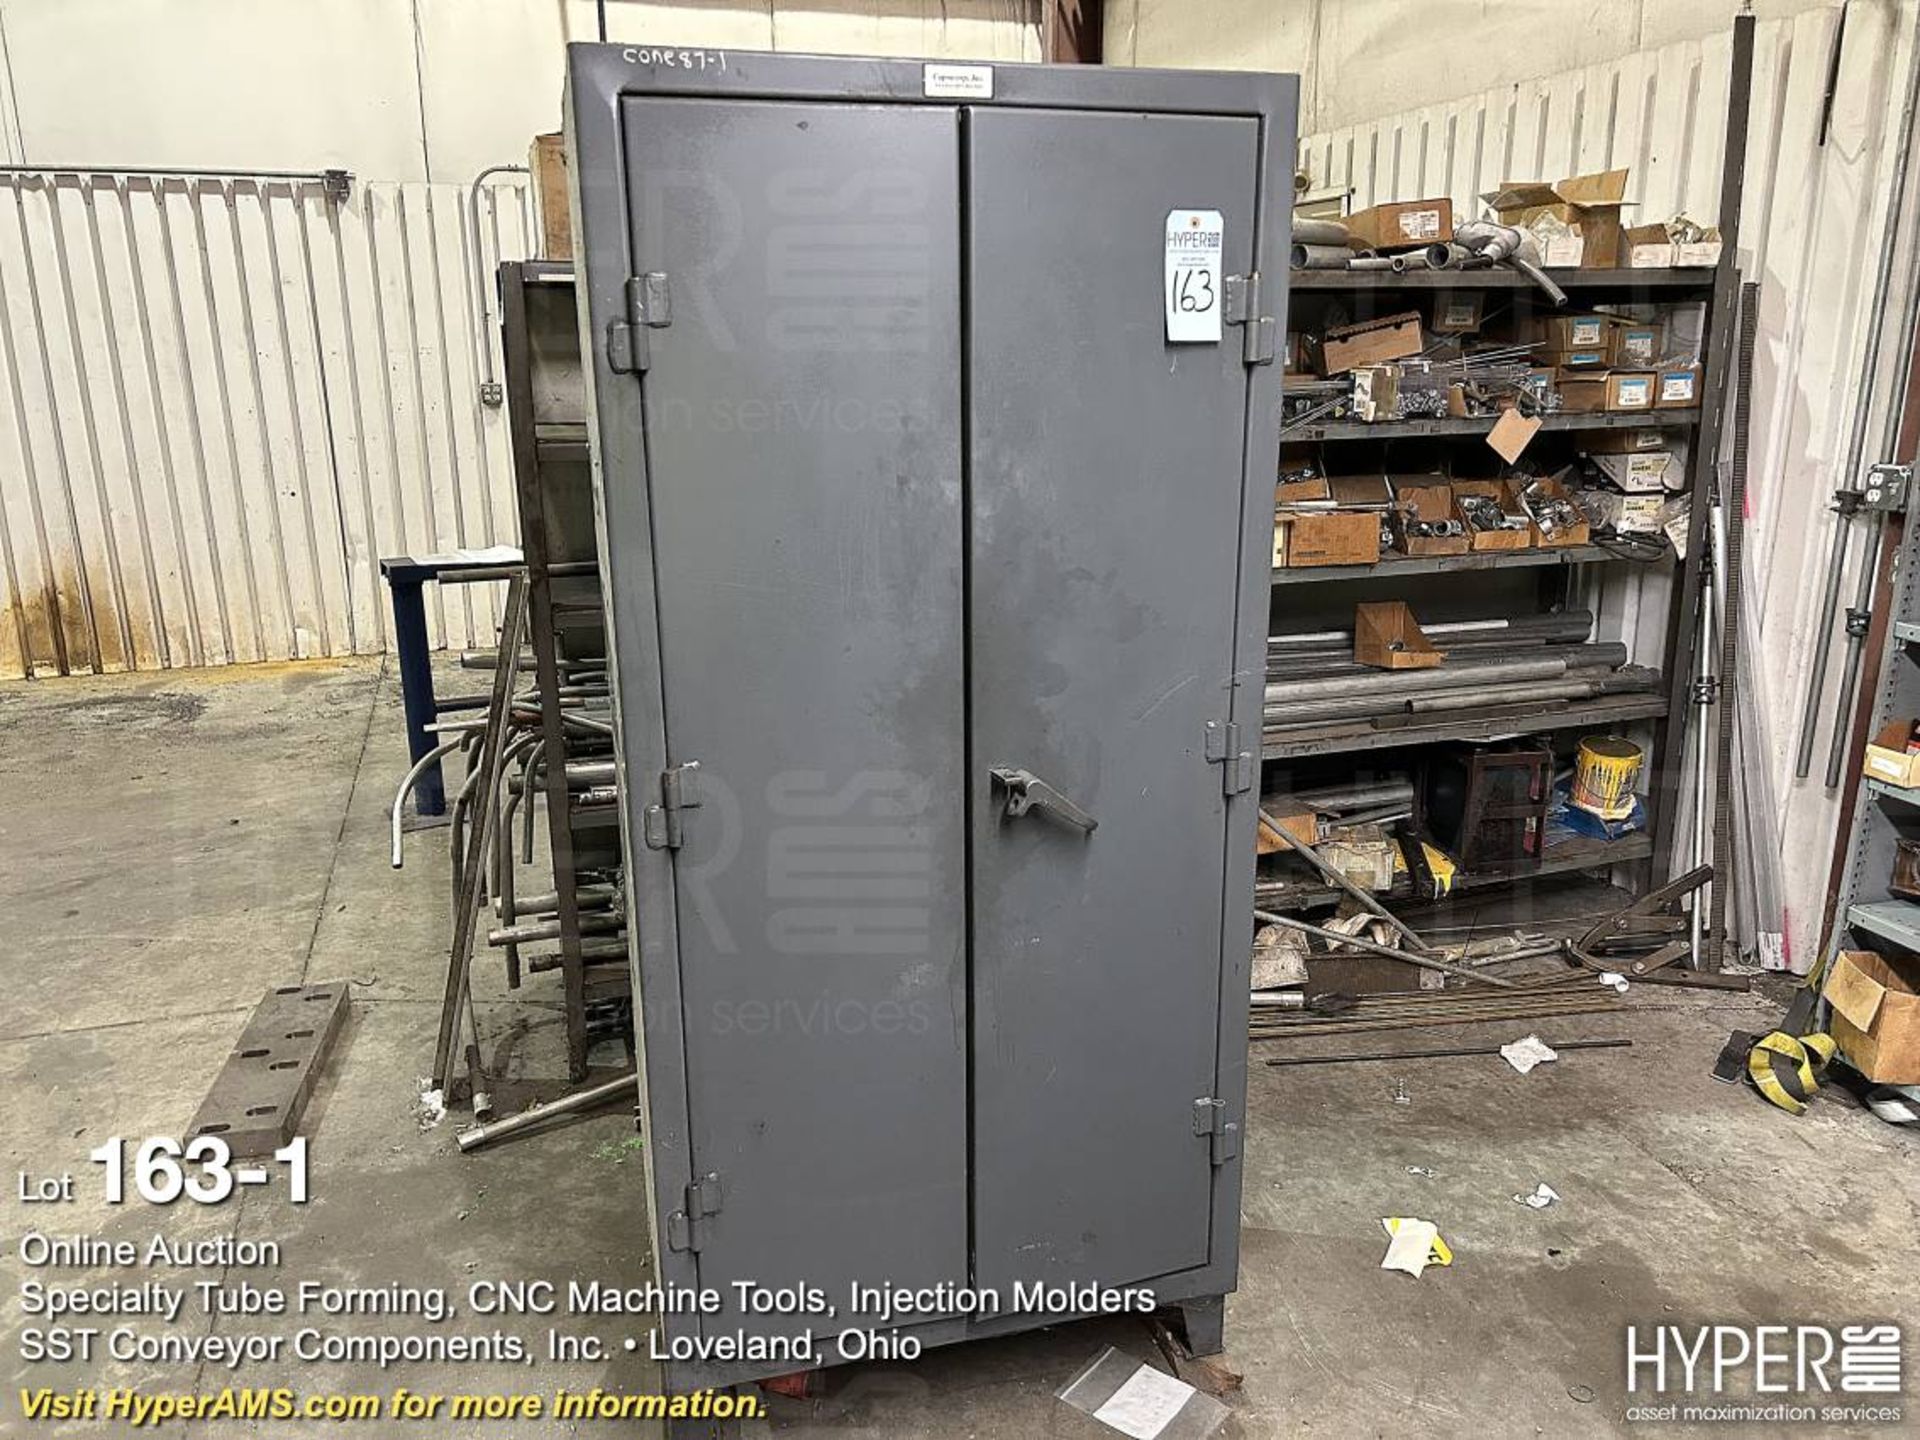 Heavy-duty steel two-door cabinet